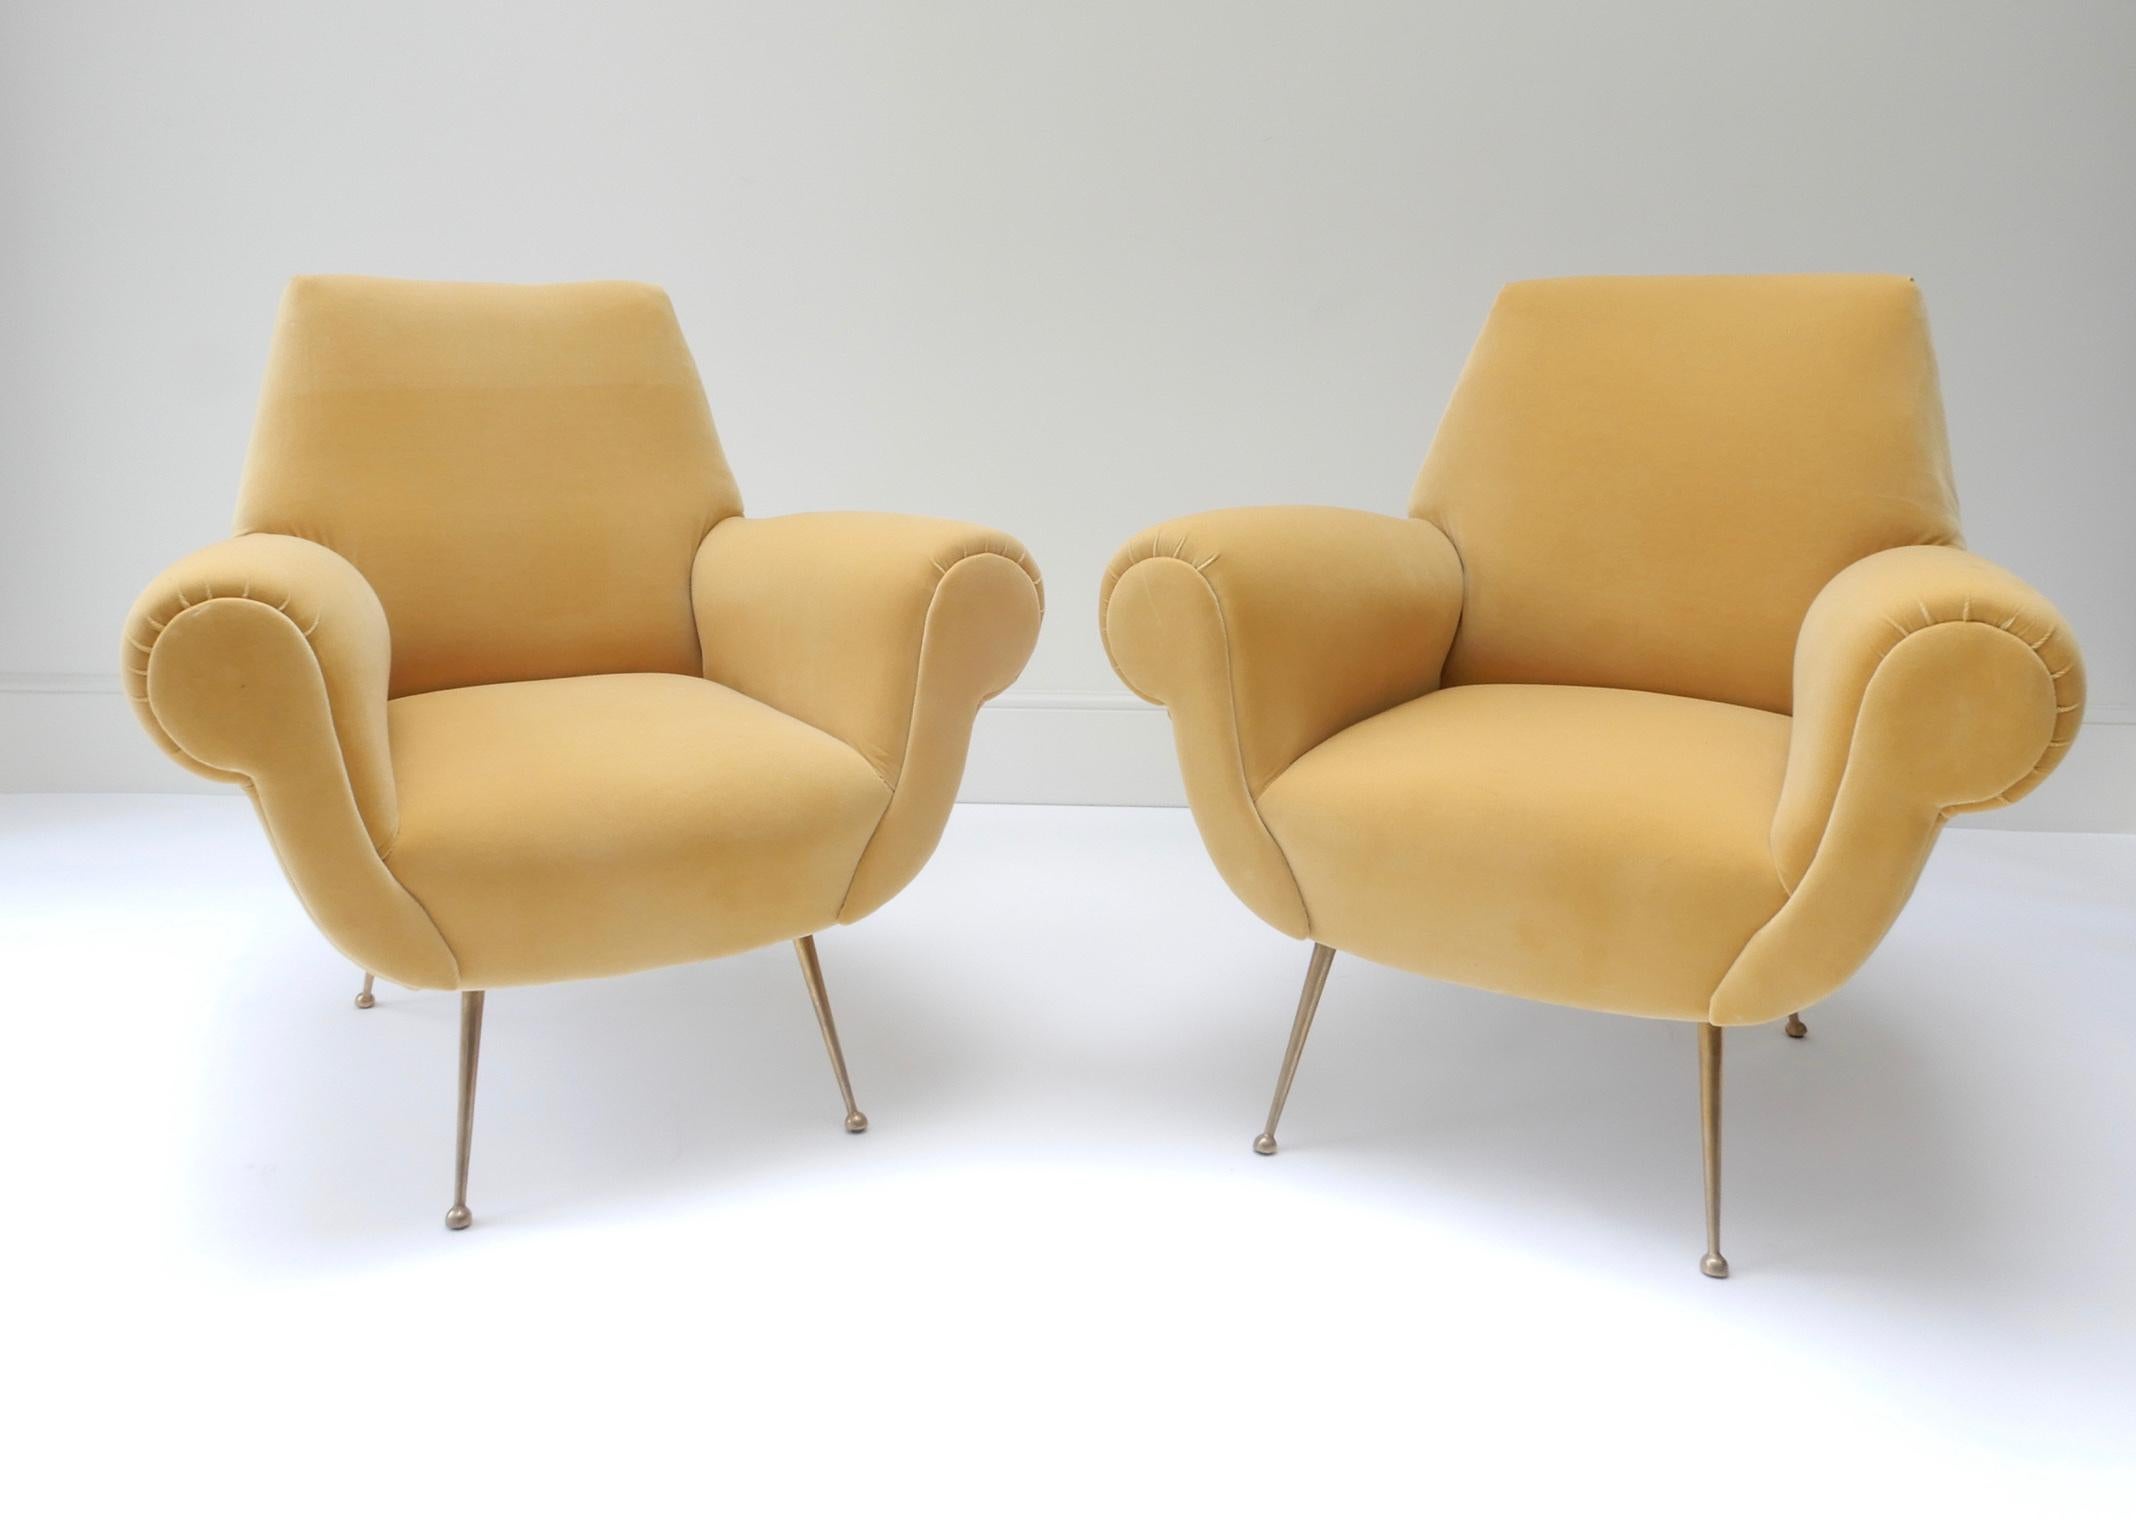 Pair of Mid-Century Modern style armchairs in yellow velvet.